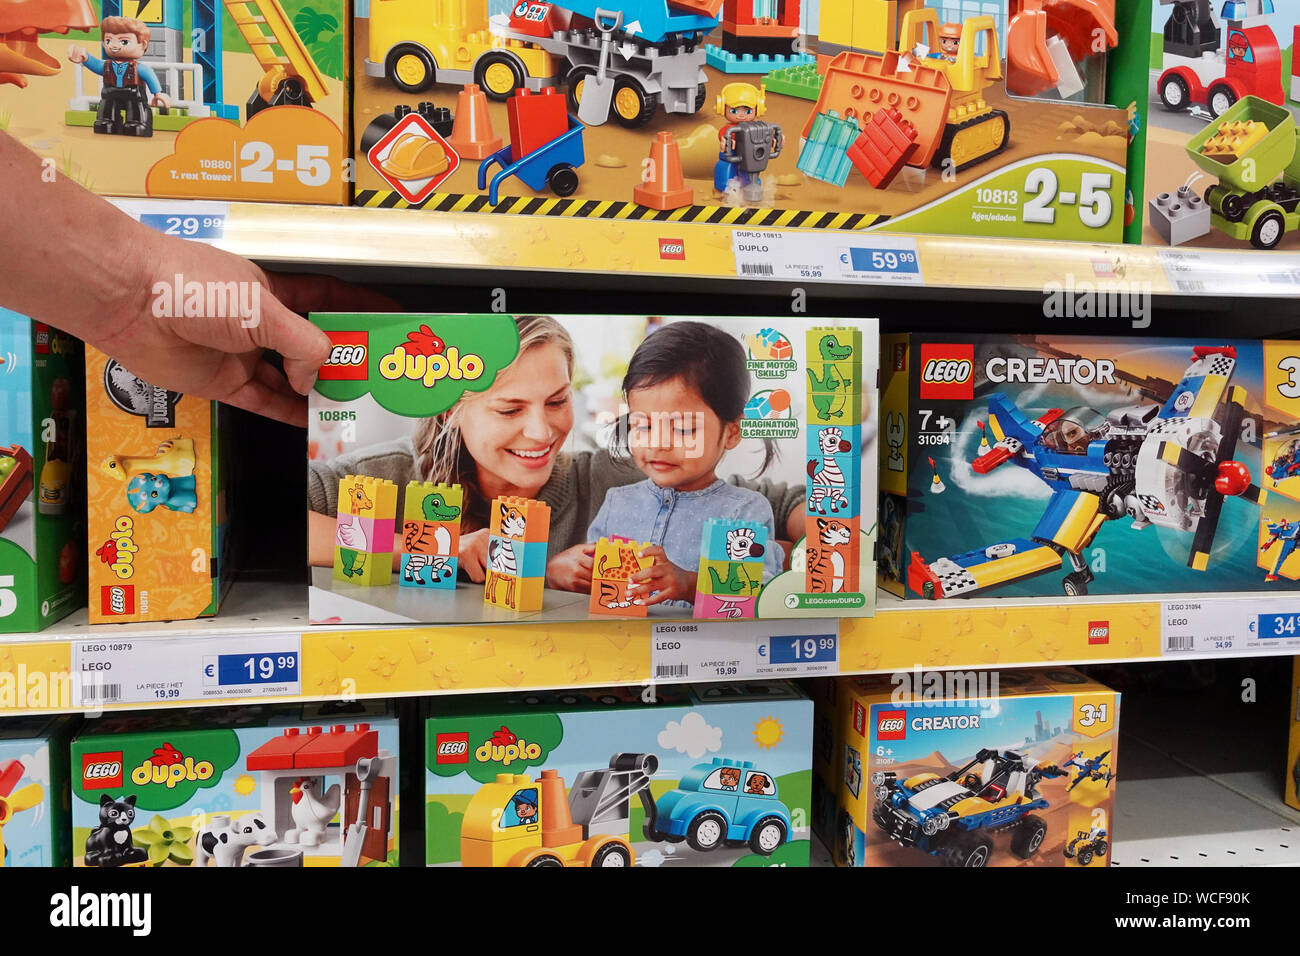 Les boîtes Lego dans un magasin de jouets Banque D'Images